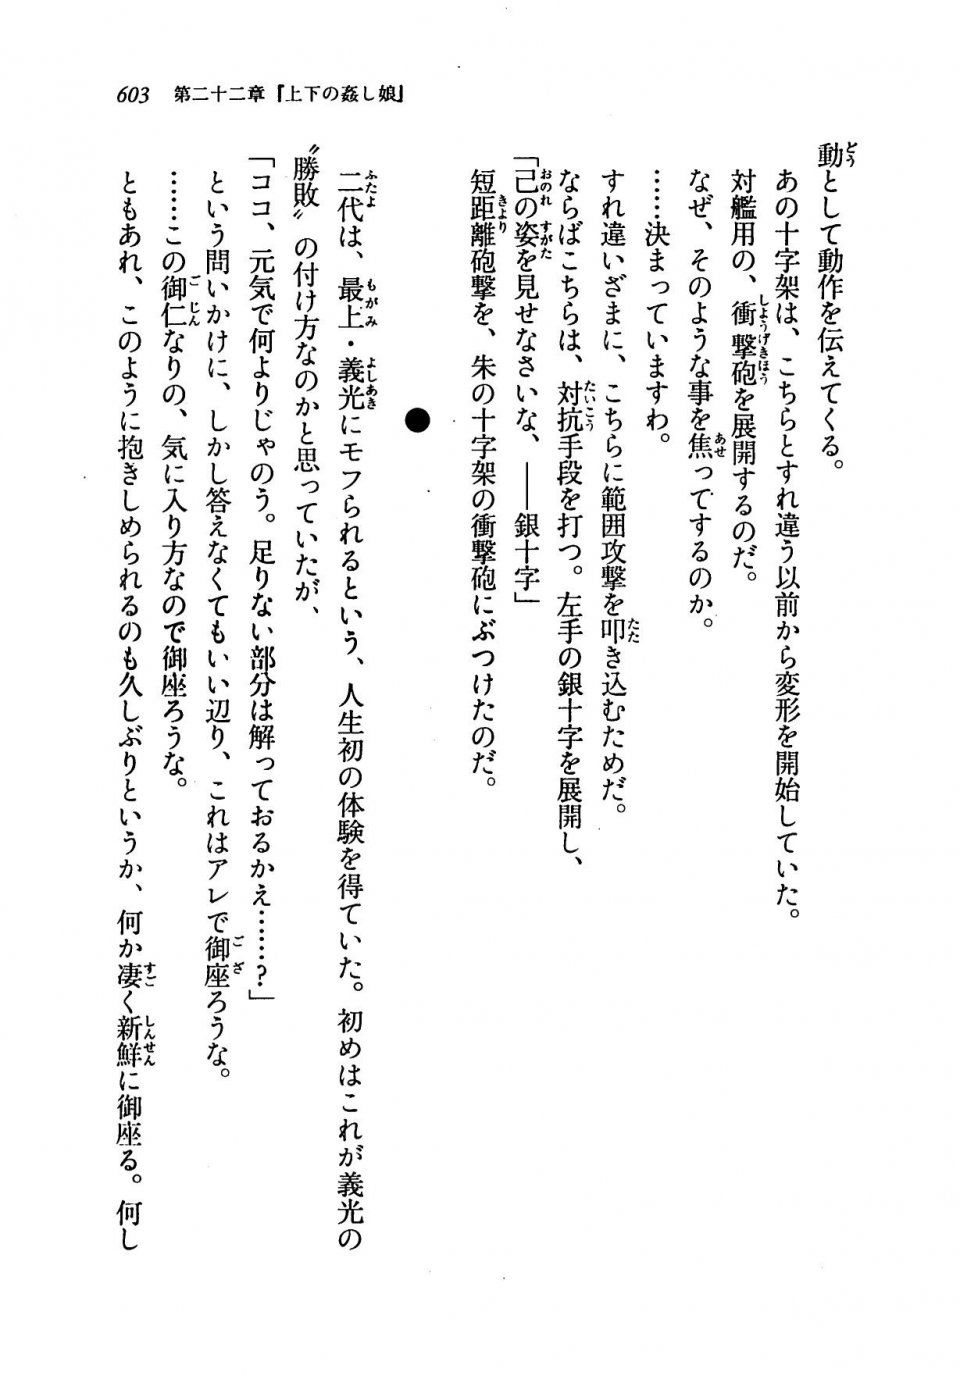 Kyoukai Senjou no Horizon LN Vol 19(8A) - Photo #603